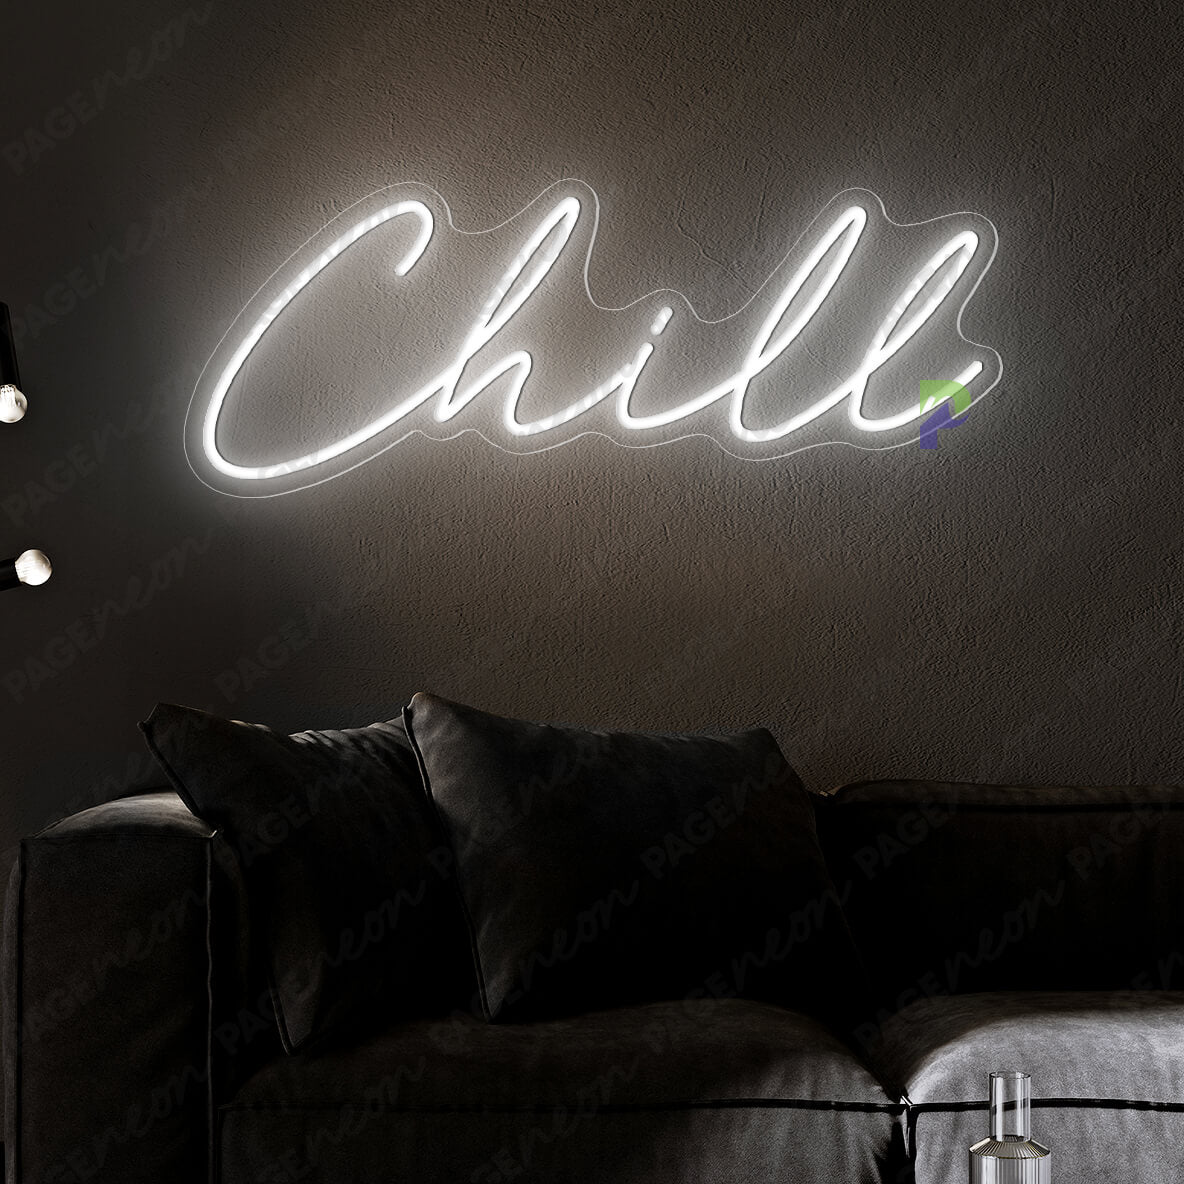 Chill Neon Sign Inspirational Led Light White